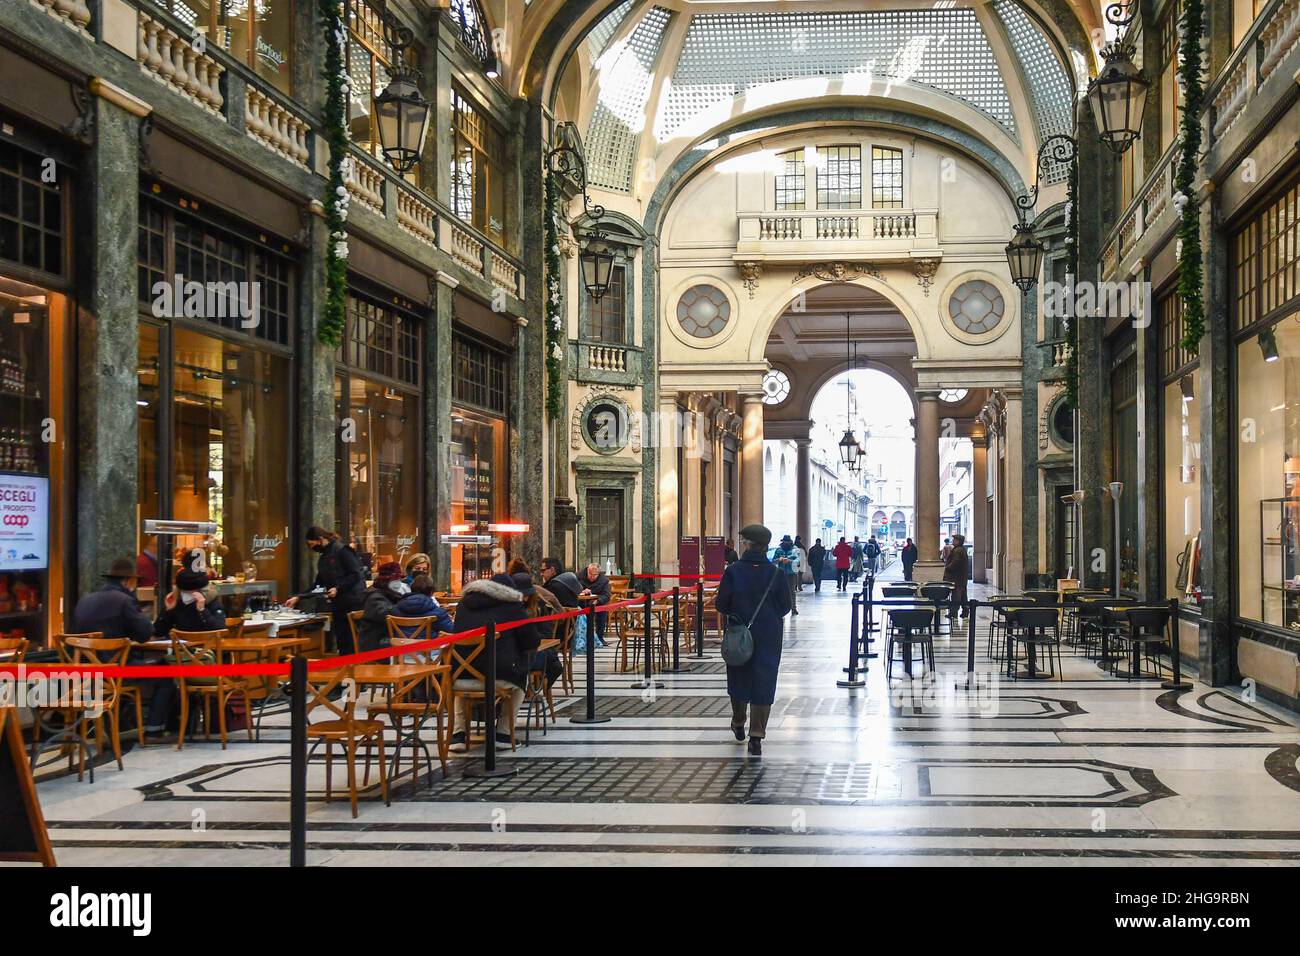 Vista della Galleria San Federico, storica galleria commerciale nel centro di Torino, con persone che camminano e si siedono in un caffè, Piemonte, Italia Foto Stock